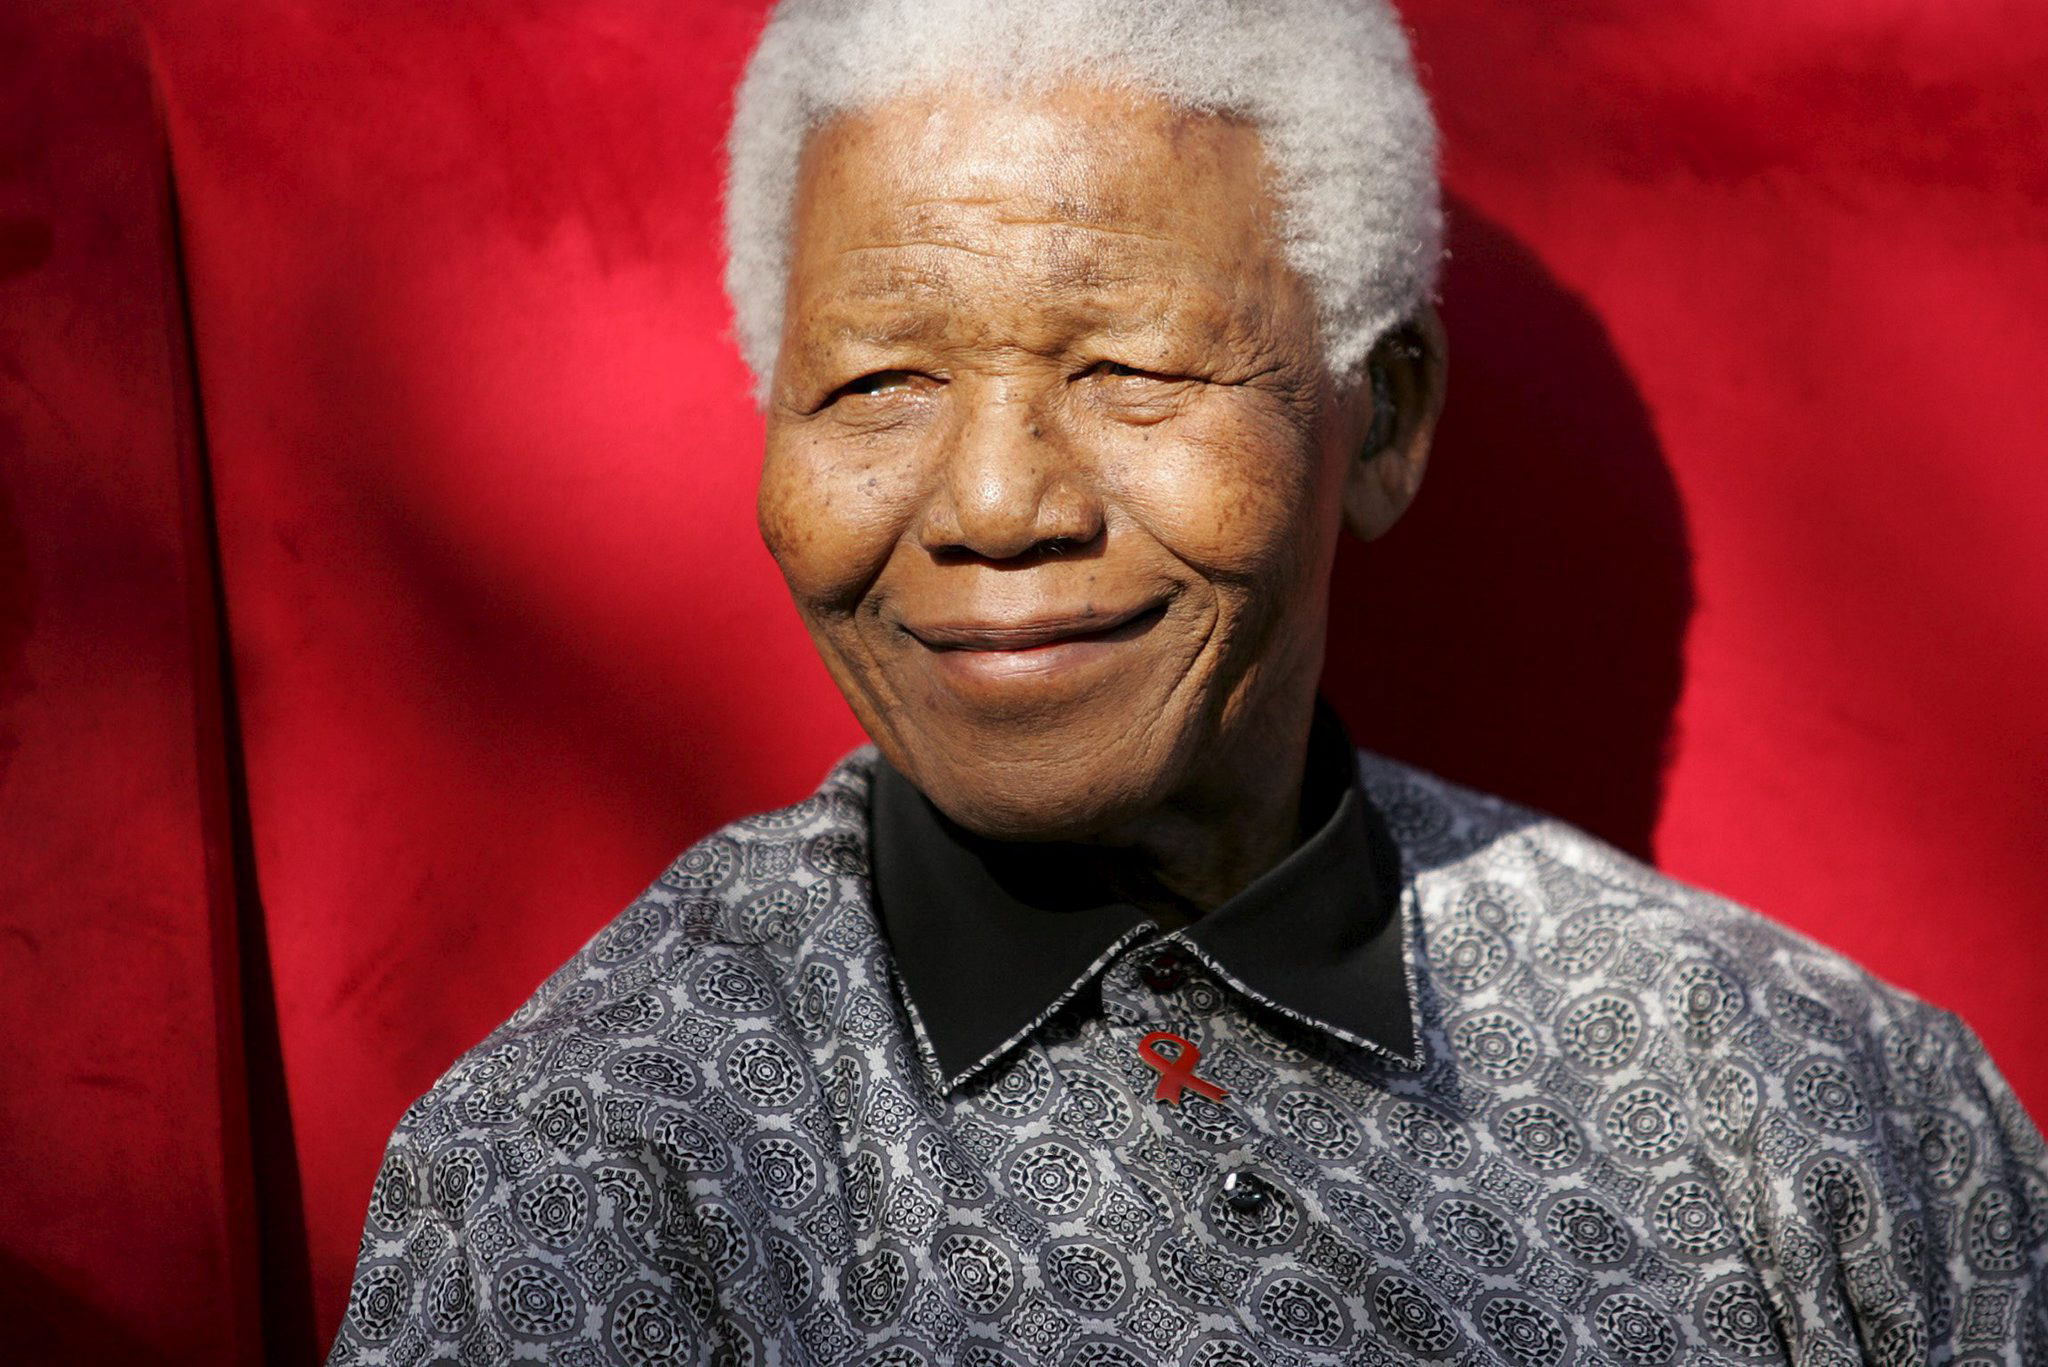 La labor de Mandela fue reconocida a nivel internacional, por lo que se fijó este día en su honor.